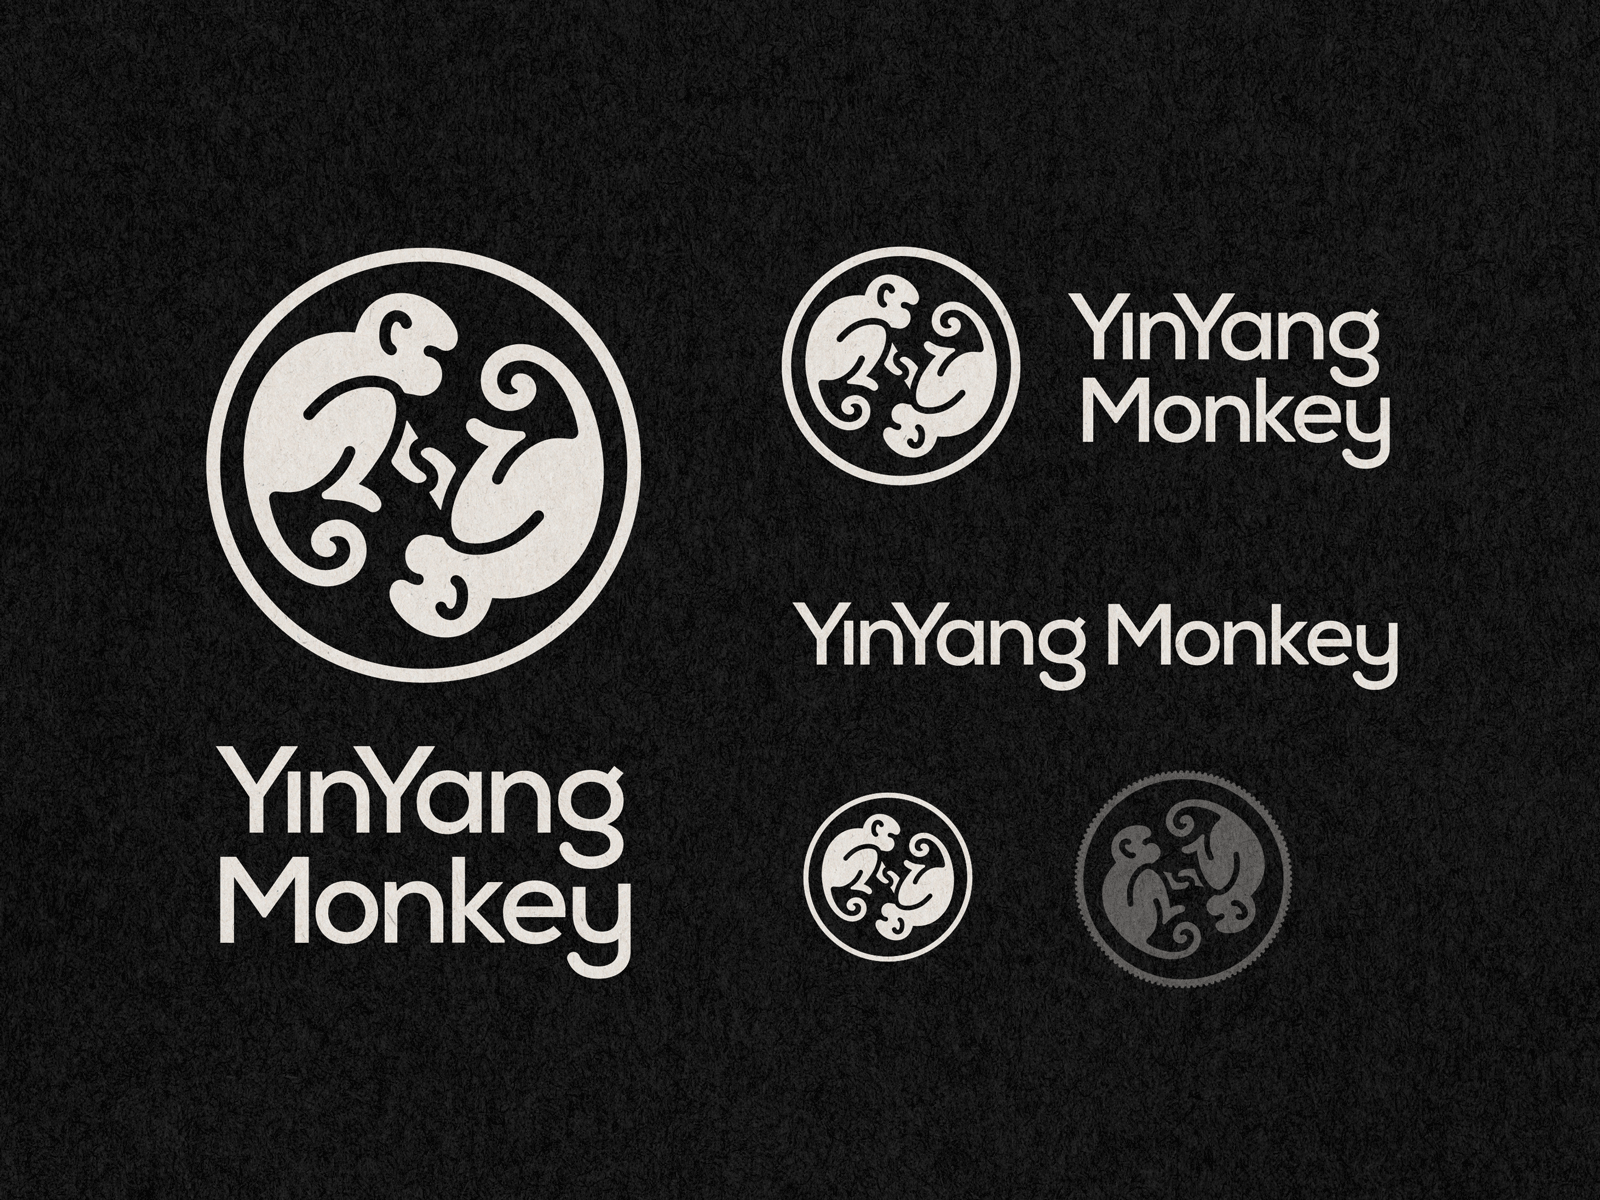 YinYang Monkey - Logo blackandwhite identitydesign logo logotype monkey monkeys yin yang yinyang